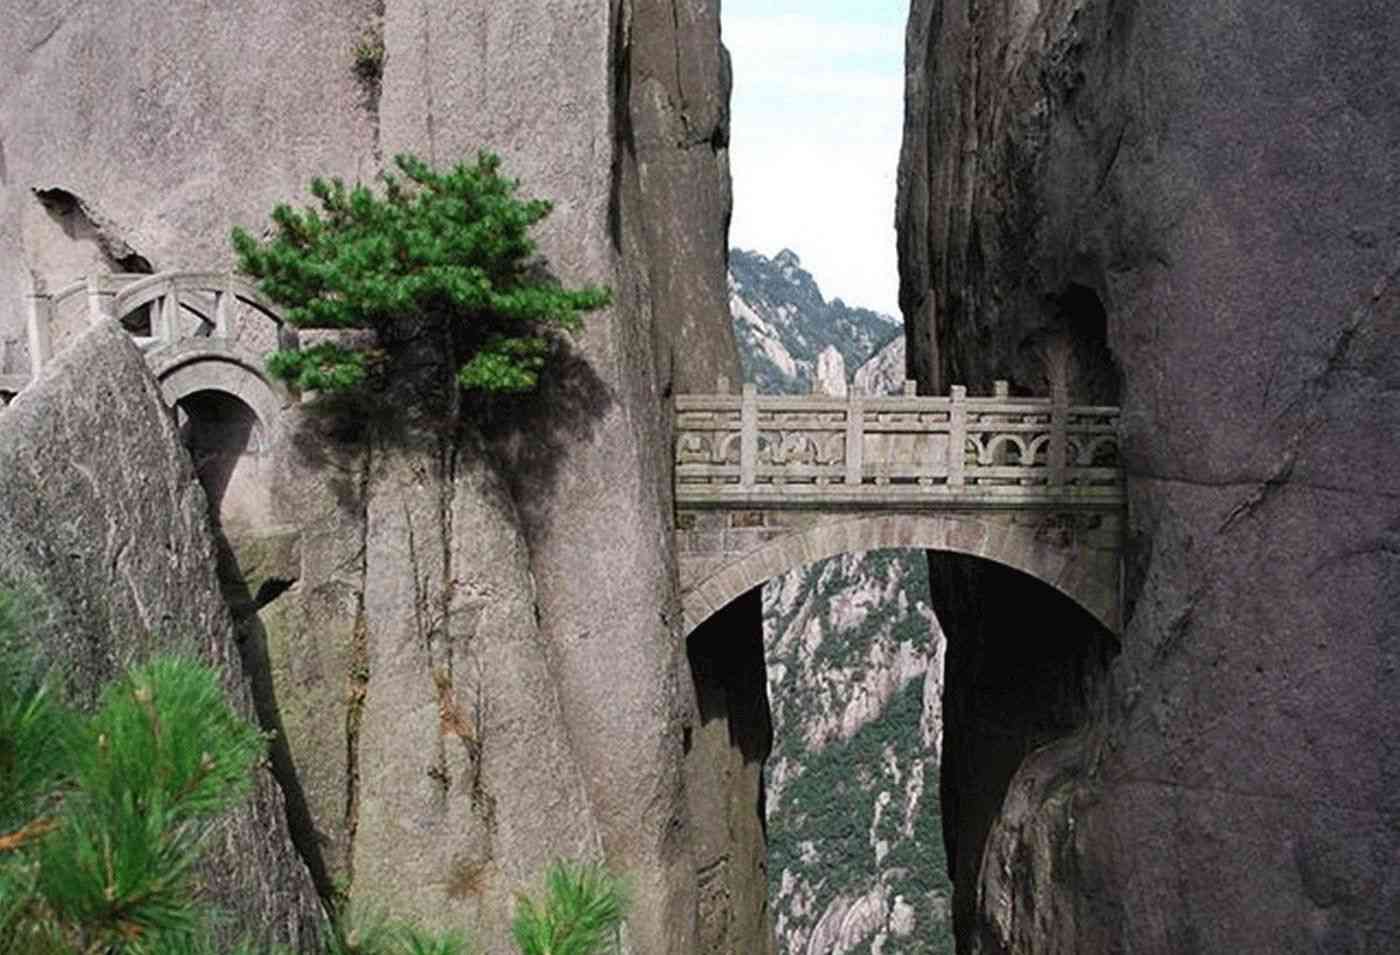 The Bridge of Immortals, Huang Shang China